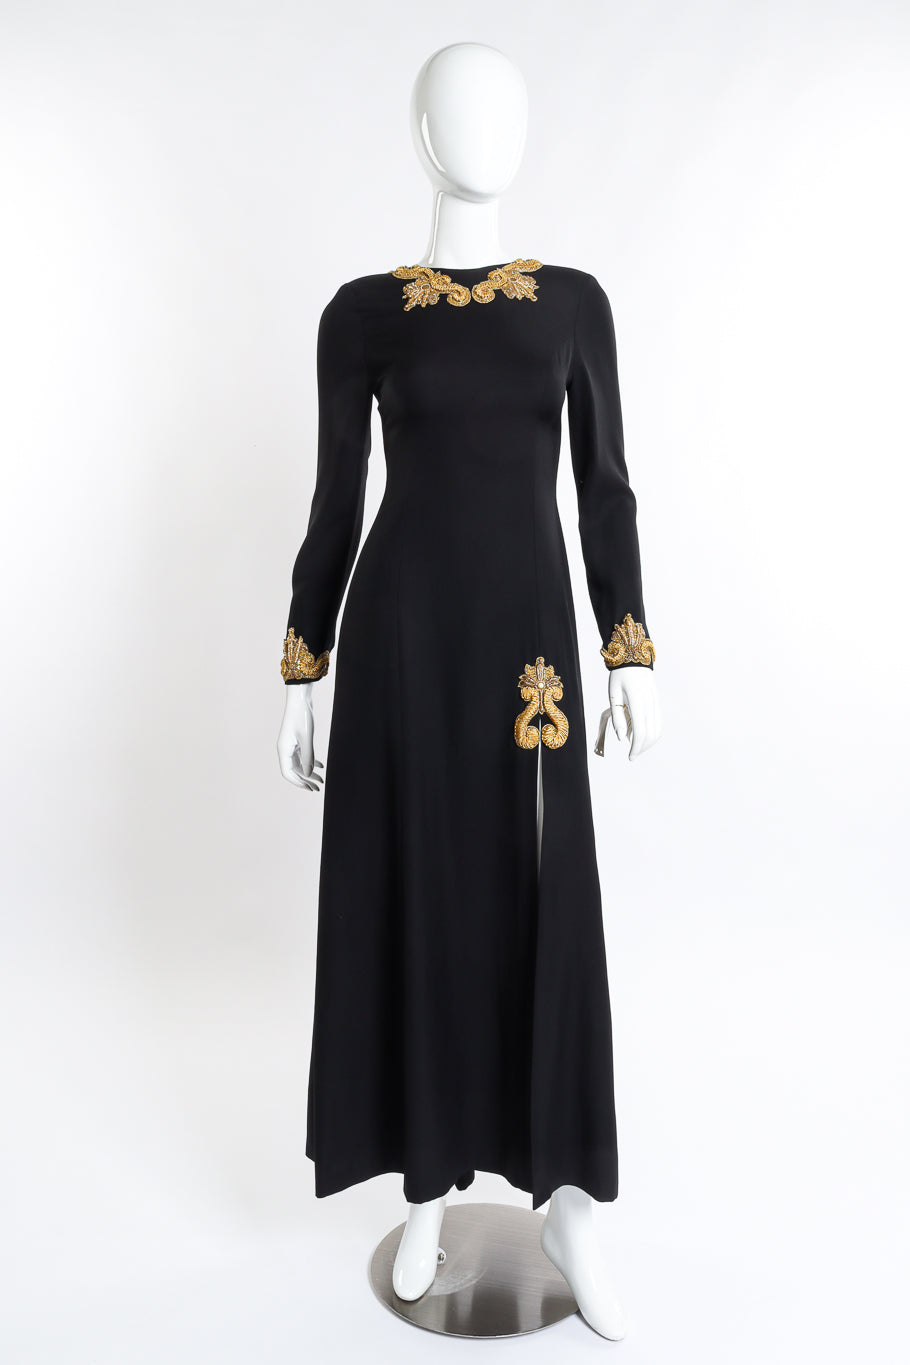 Vintage Louis Féraud Gilded Soutache Trim Dress front on mannequin @recess la